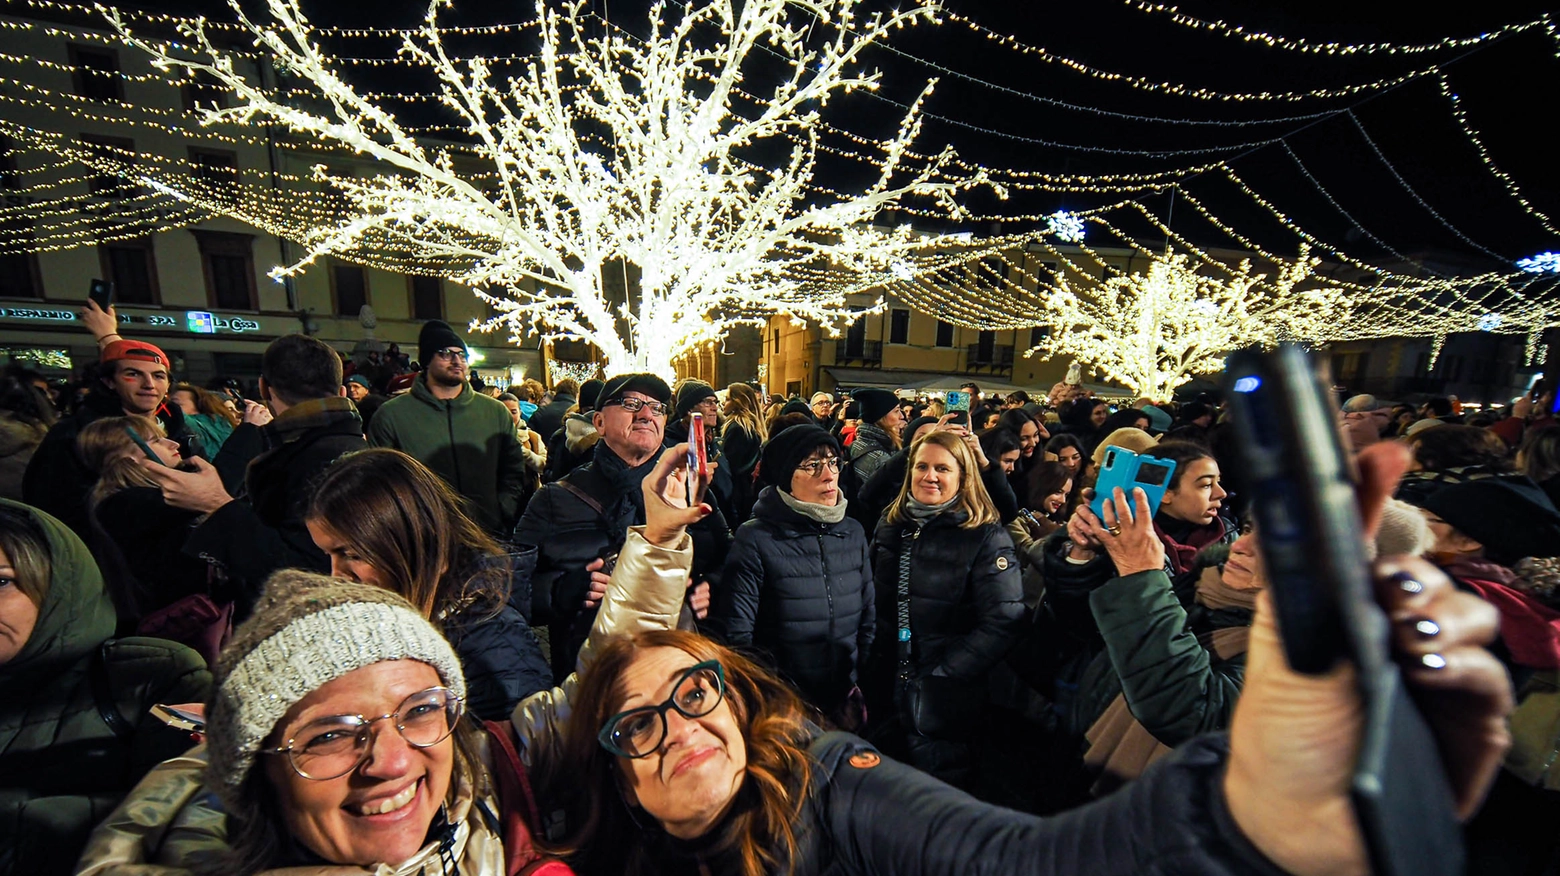 Trampolieri e acrobati protagonisti dello show in piazza Cavour. A Capodanno l’incendio del castello e il concerto di Biagio Antonacci